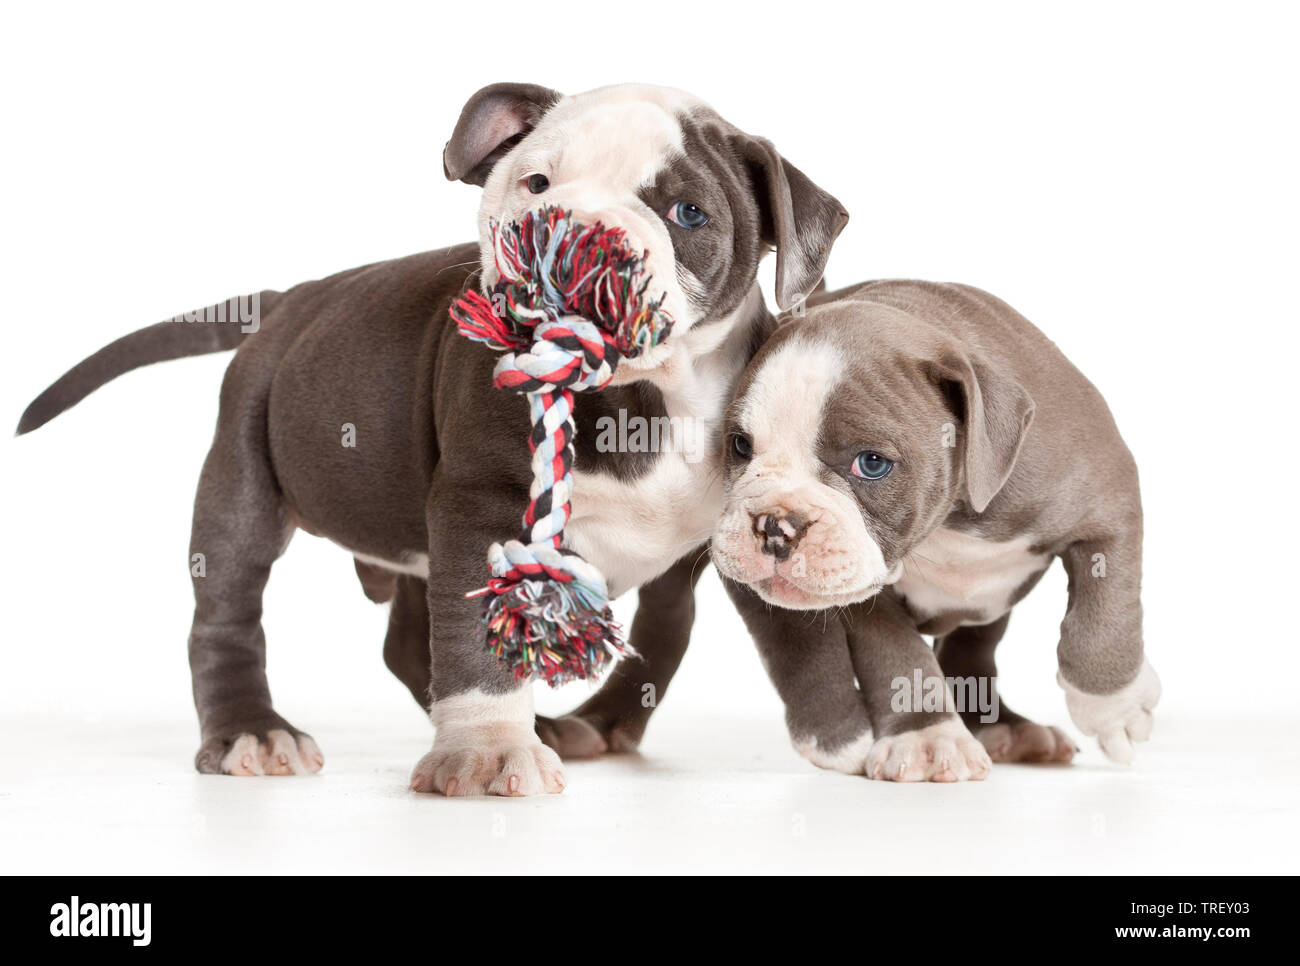 Englische Bulldogge. Zwei Welpen spielen mit einem Spielzeug Seil. Studio Bild vor einem weißen Hintergrund. Deutschland Stockfoto